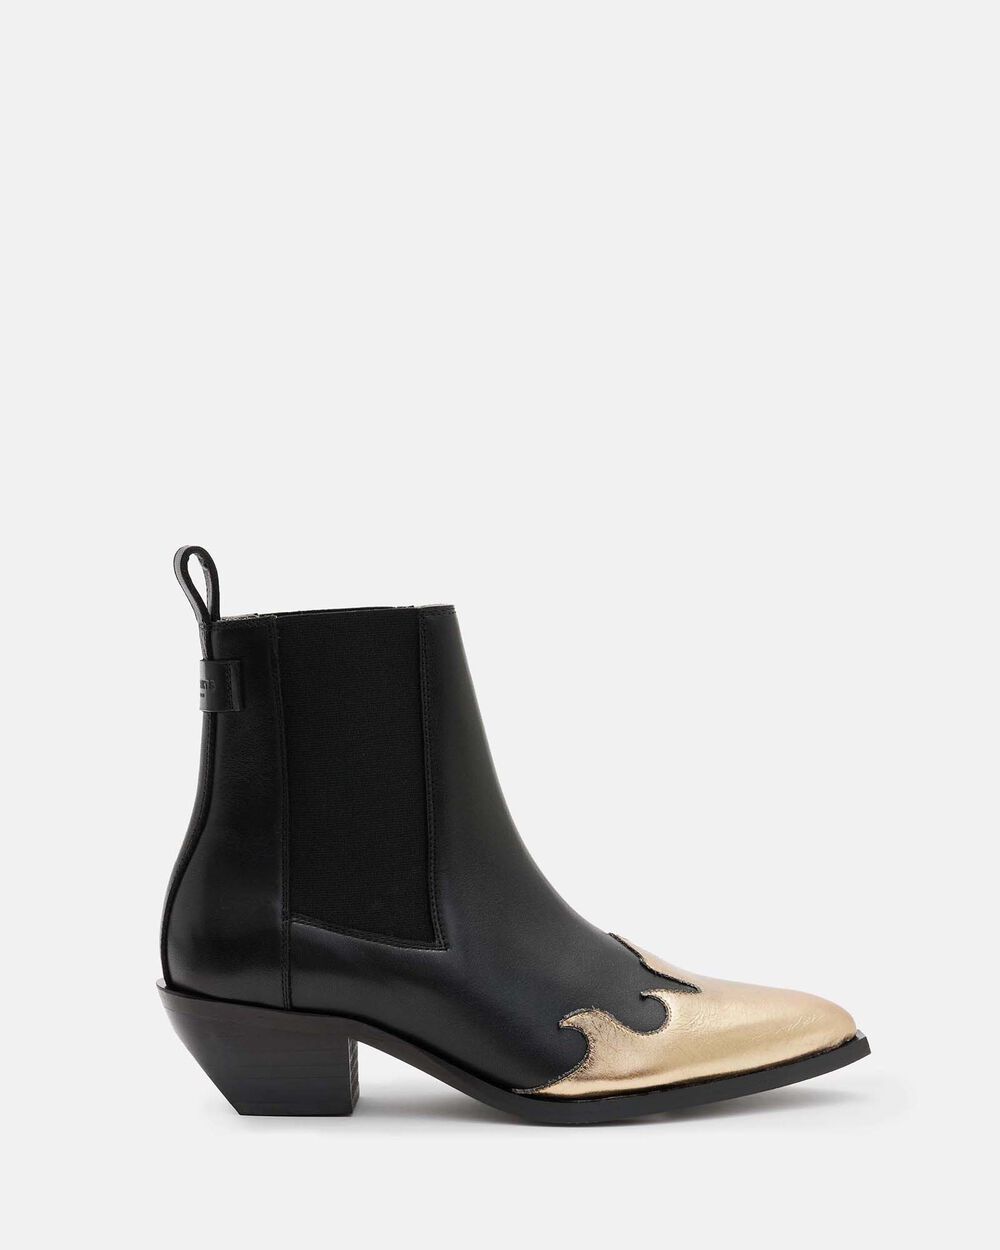 Кожаные ботинки в стиле вестерн с острым носком Dellaware AllSaints, черное золото